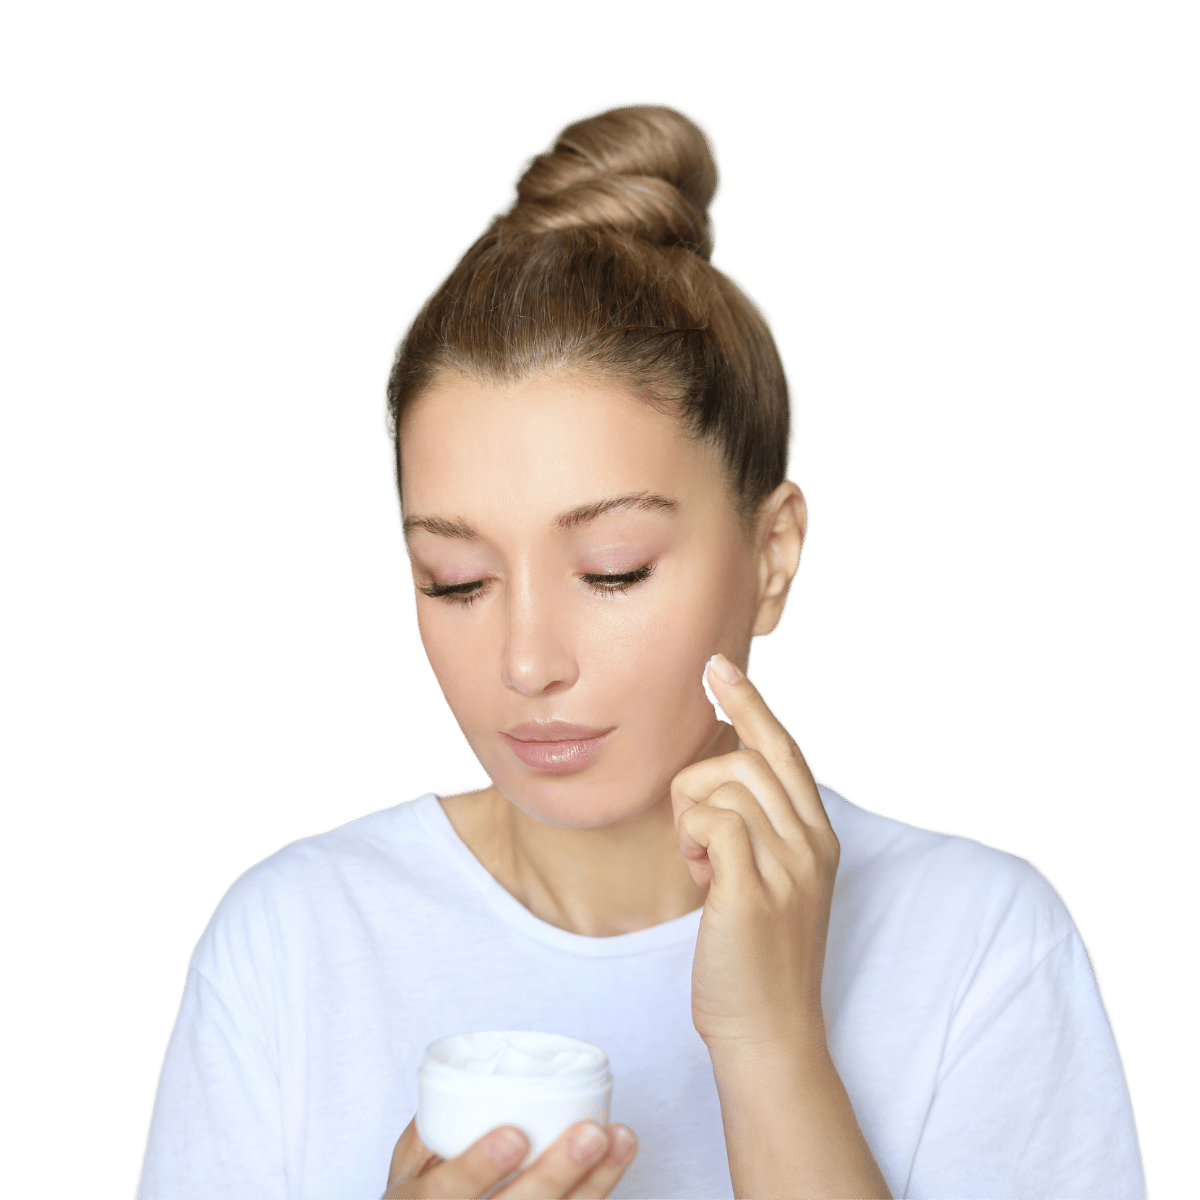 Gesichtspflege bei Rosacea - Die 1. Säule des DemoDerm Hautkonzepts